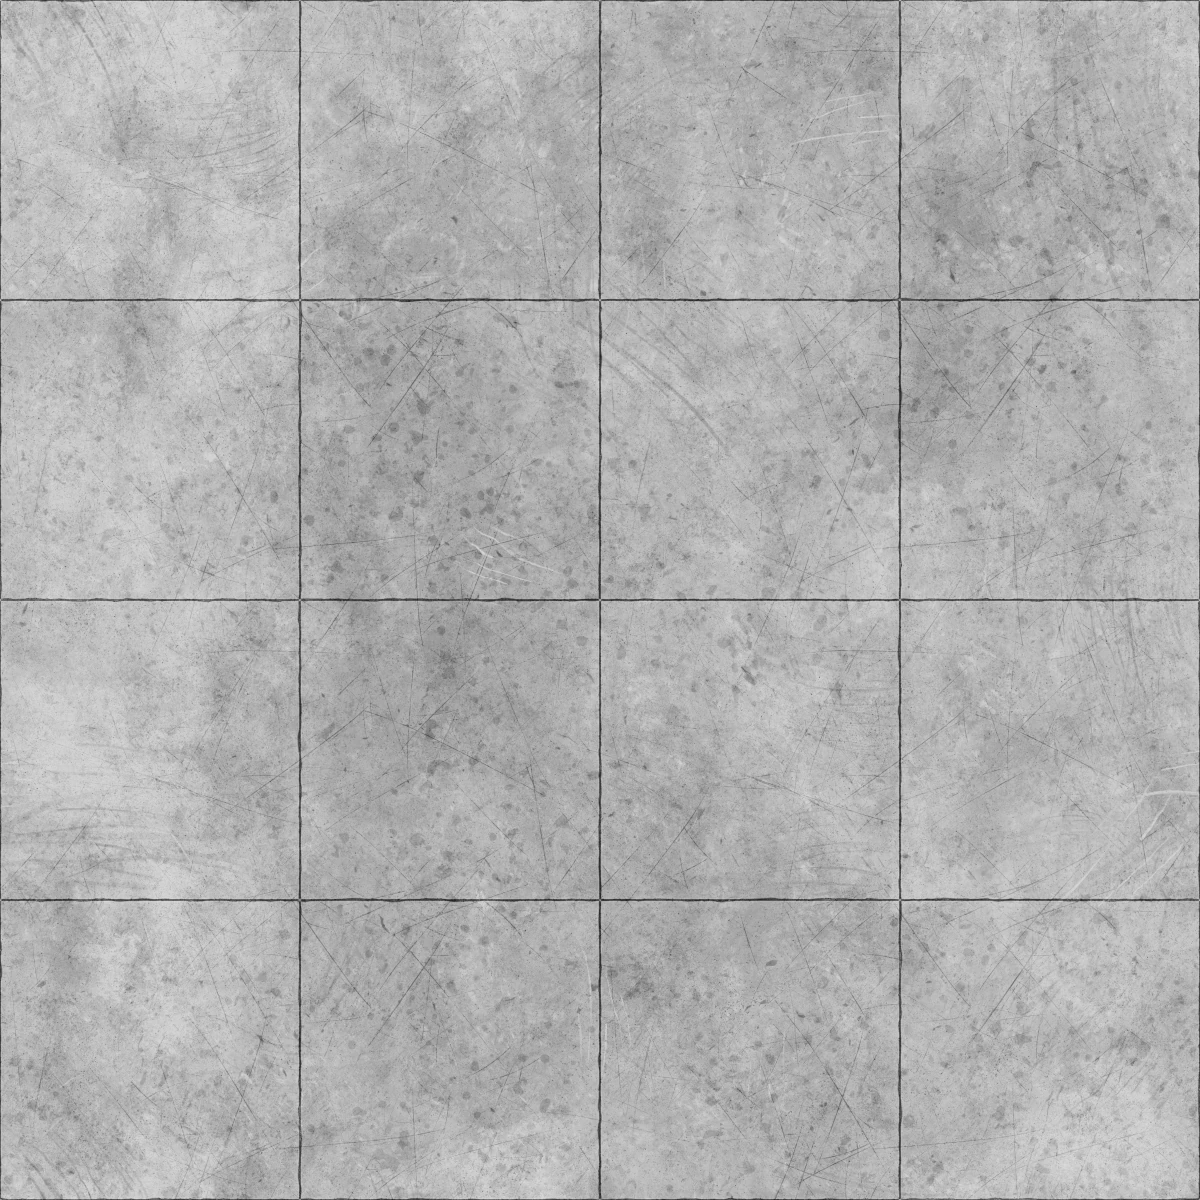 Polished Concrete Tiles PBR Texture